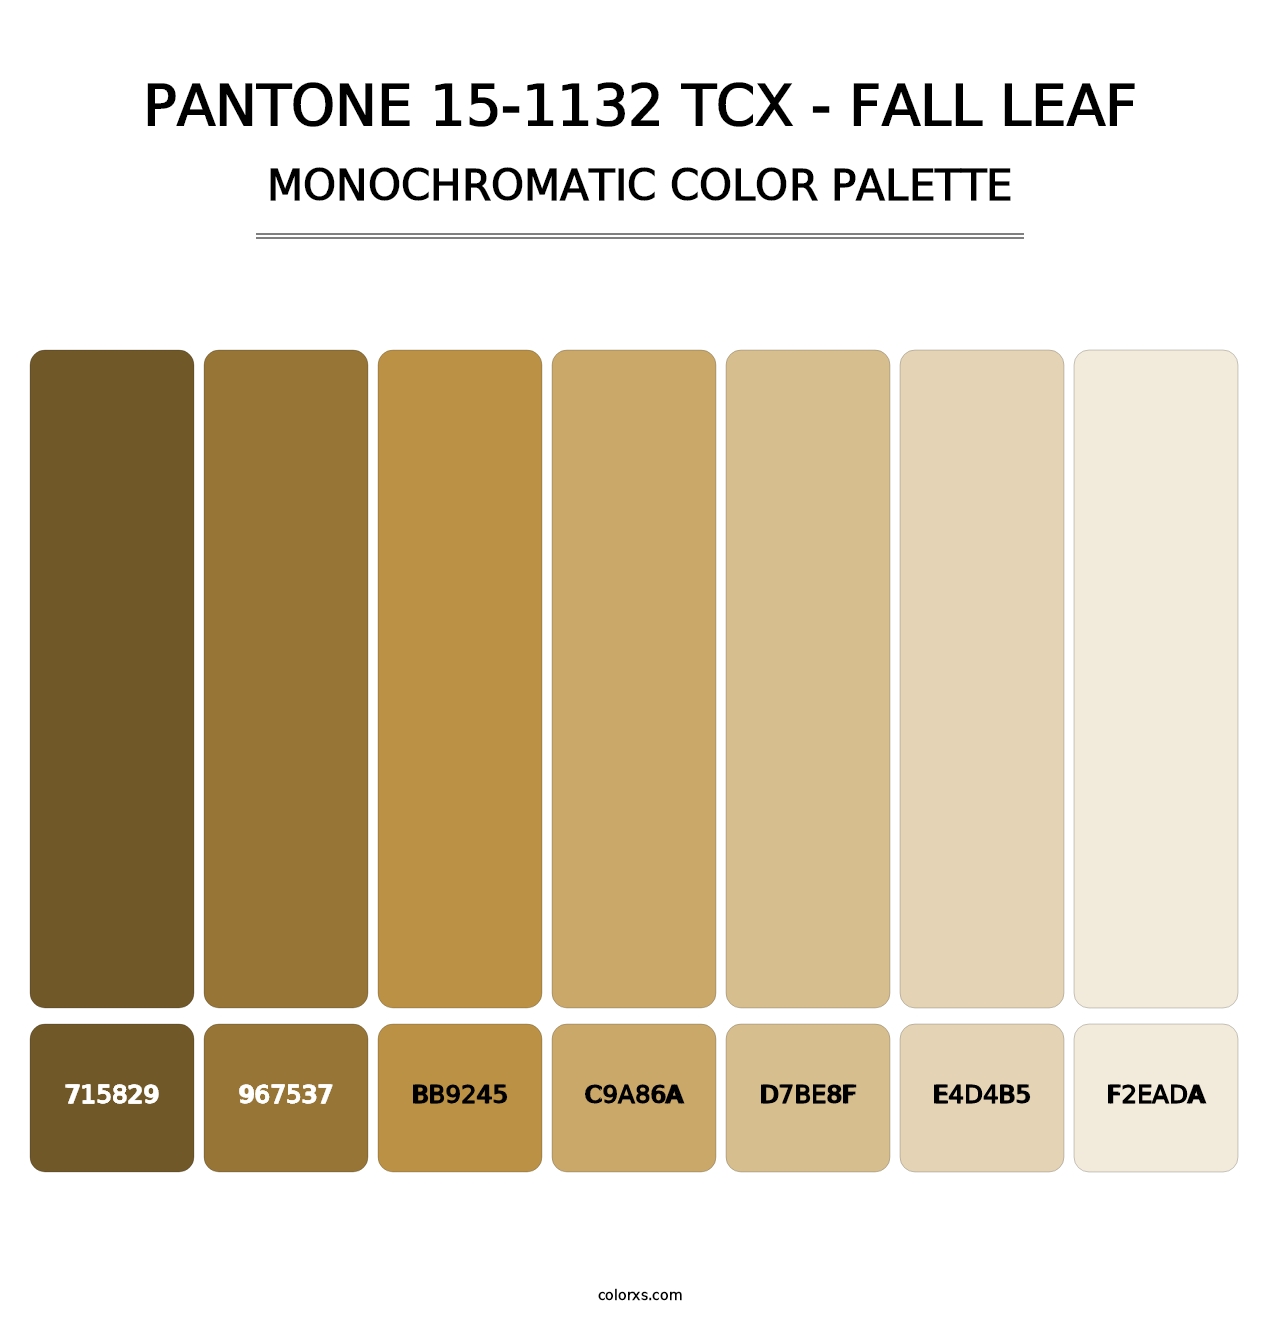 PANTONE 15-1132 TCX - Fall Leaf - Monochromatic Color Palette